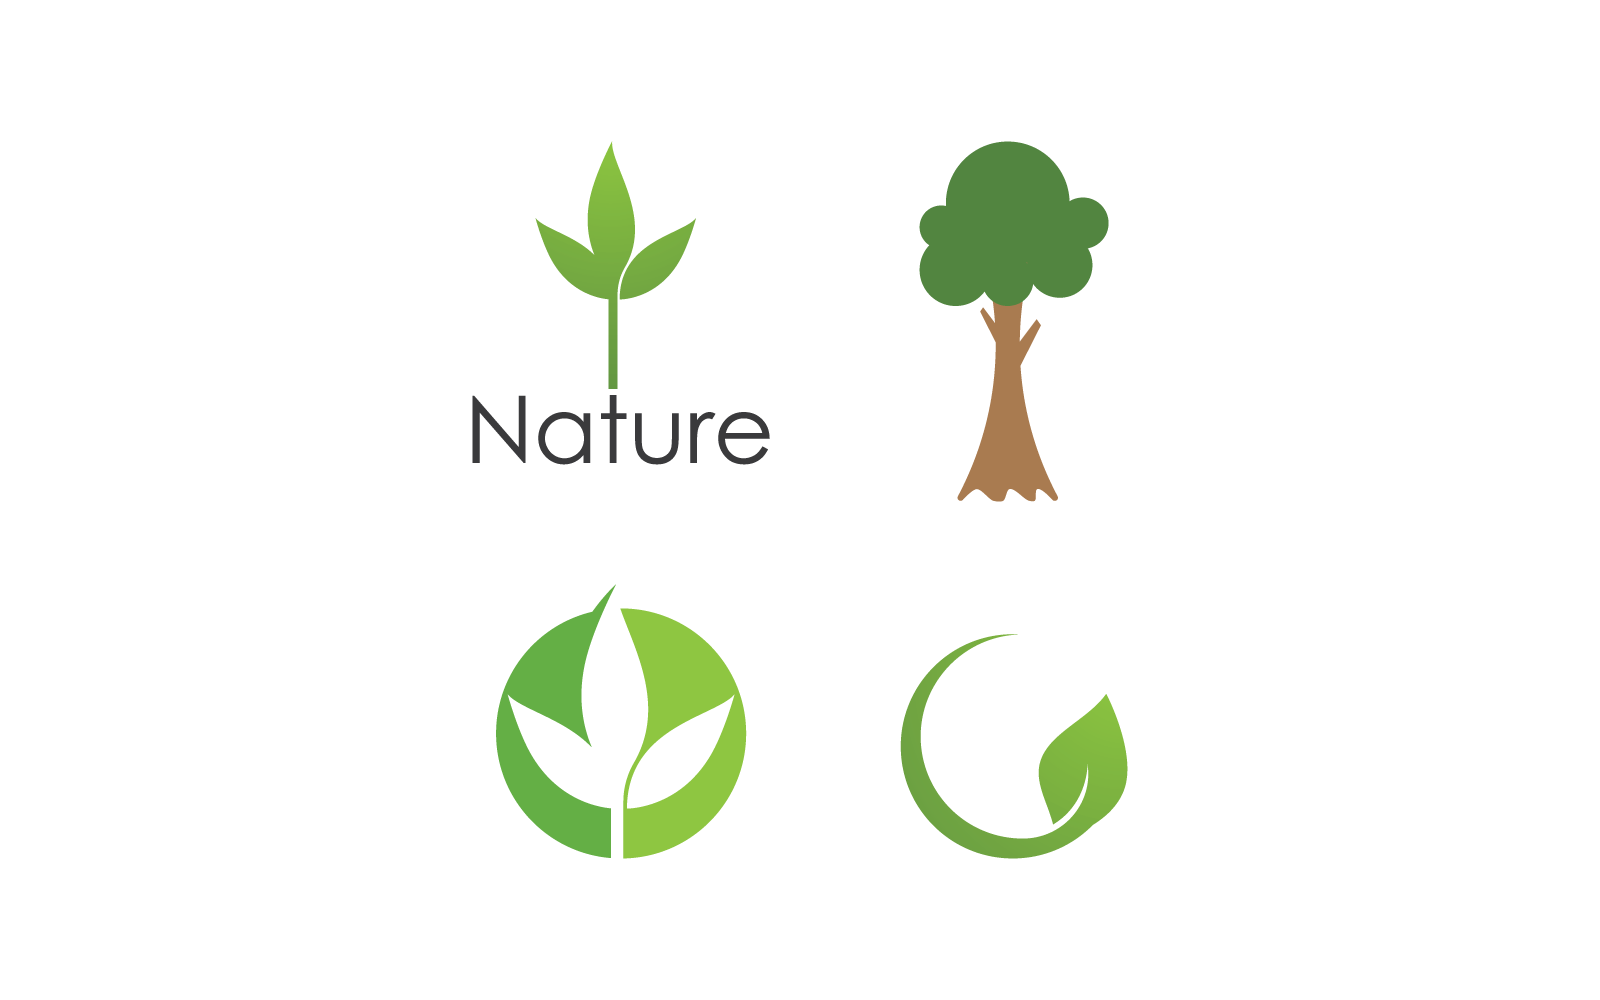 Eco green leaf illustration design logo vector template